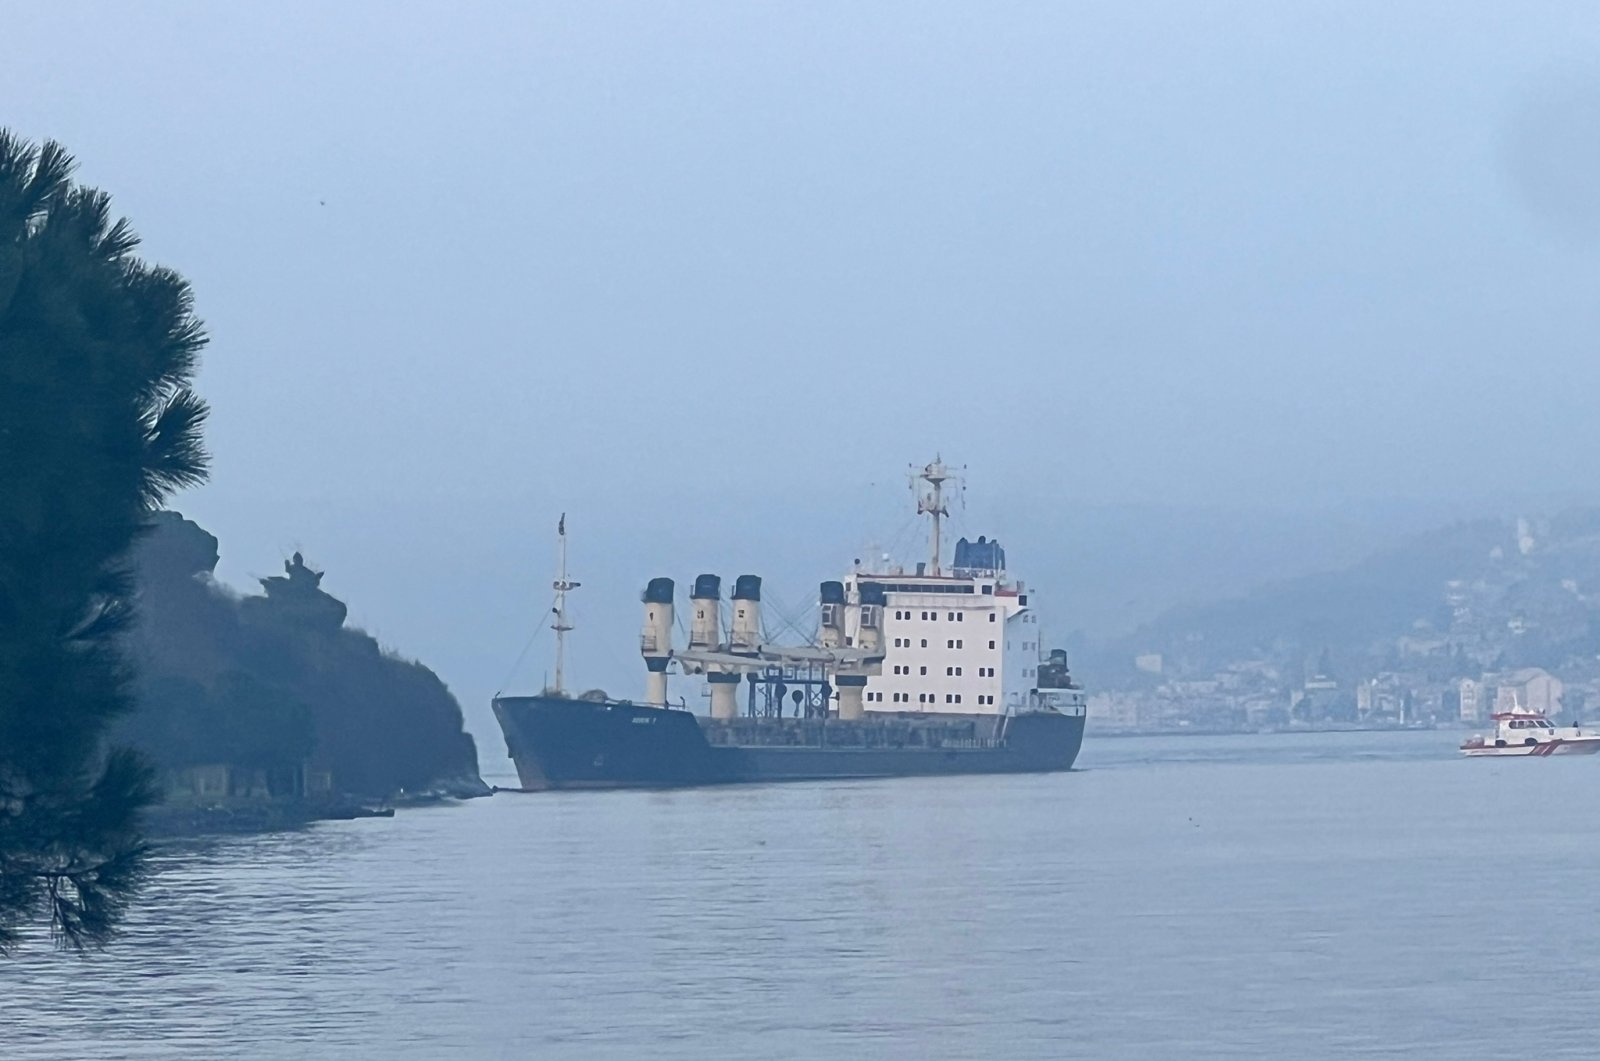 Lalu lintas maritim di Bosporus terhenti karena kapal kargo terjebak